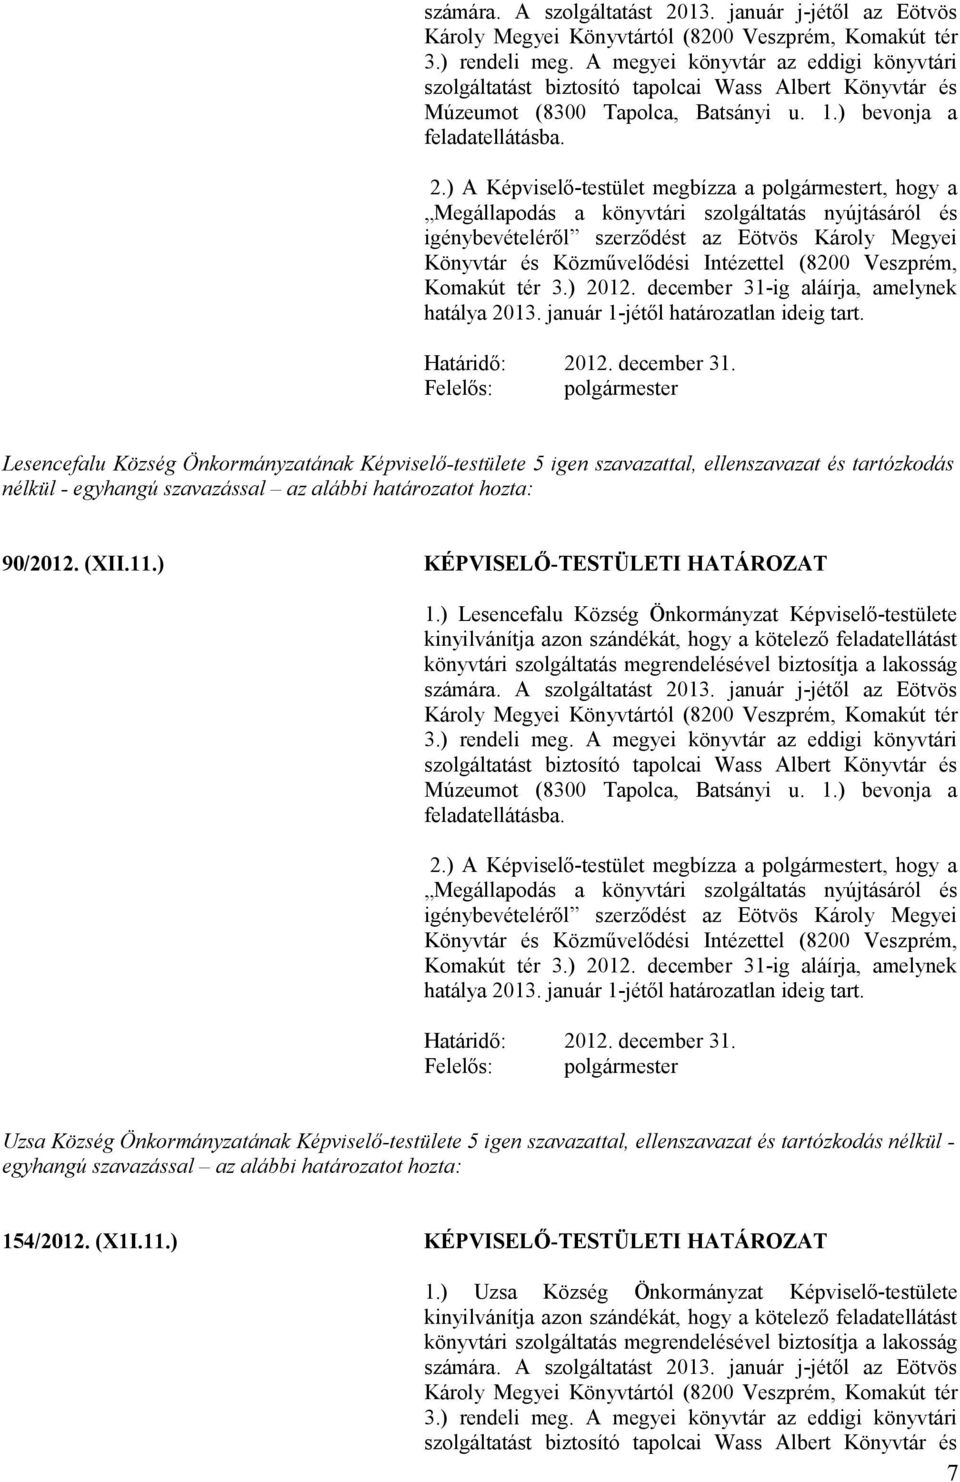 Megállapodás a könyvtári szolgáltatás nyújtásáról és igénybevételéről szerződést az Eötvös Károly Megyei Könyvtár és Közművelődési Intézettel (8200 Veszprém, Komakút tér 3.) 2012.